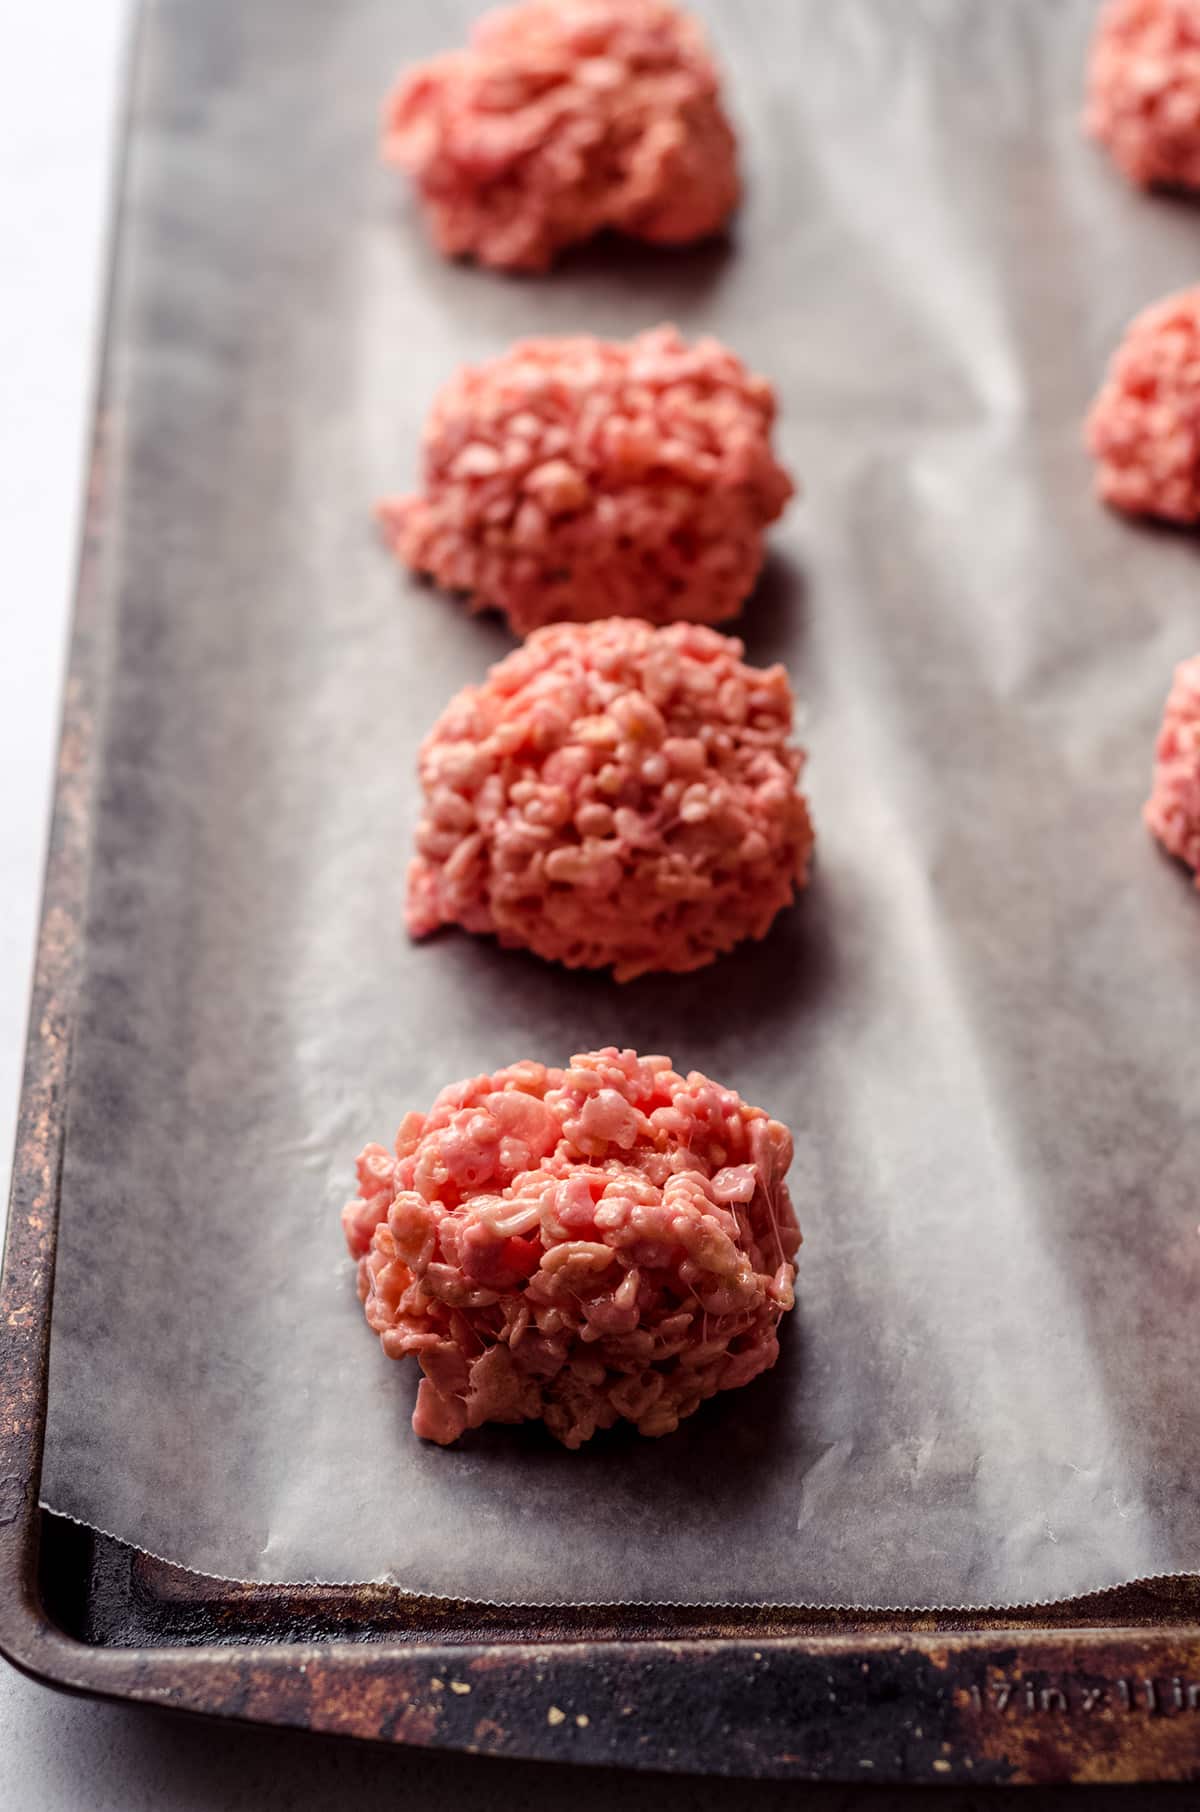 mounds of pink rice krispies treats on baking sheet to make brains